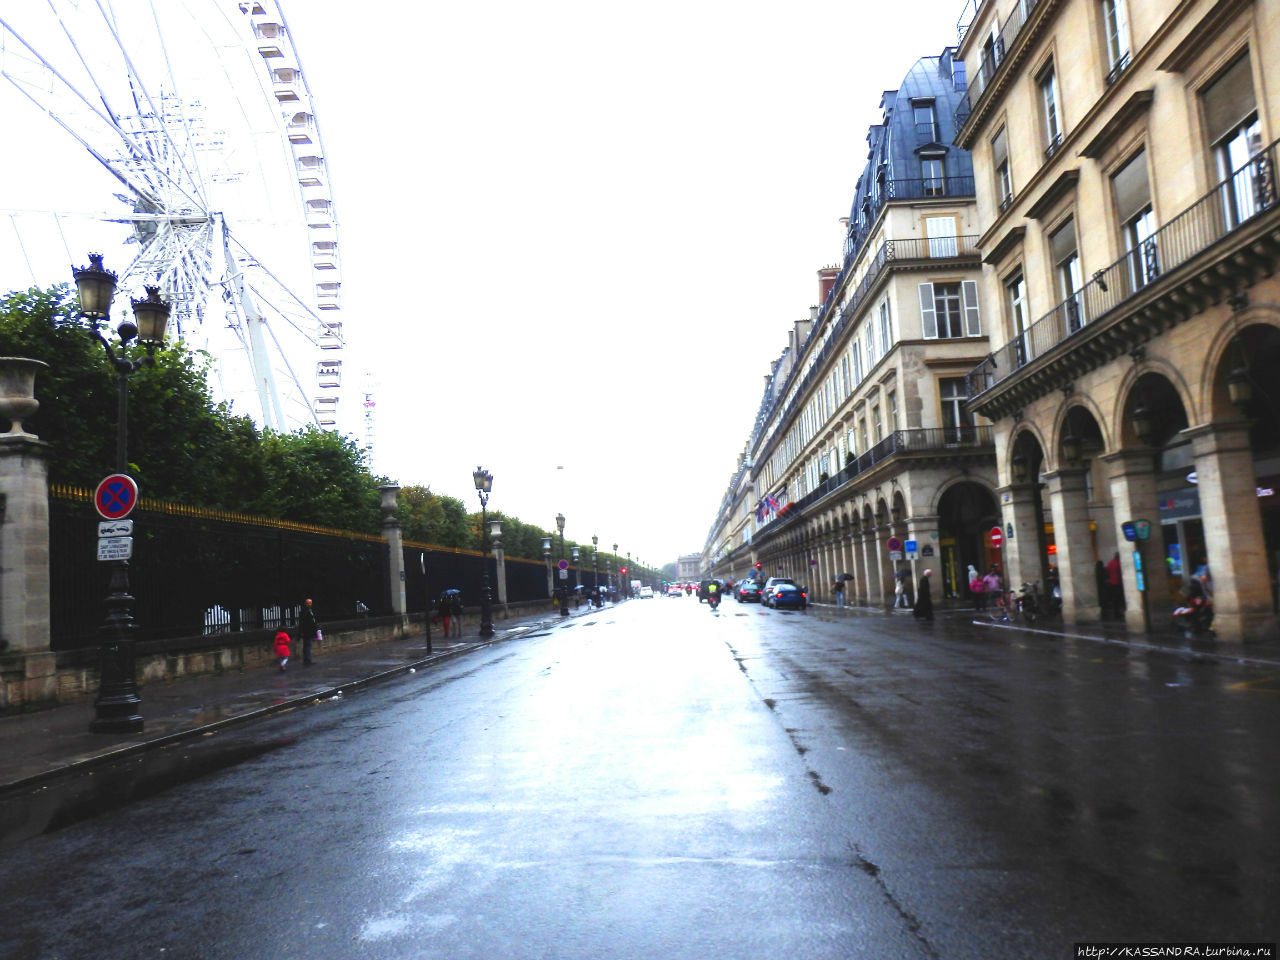 Улица Риволи. Площадь Пирамид Париж, Франция